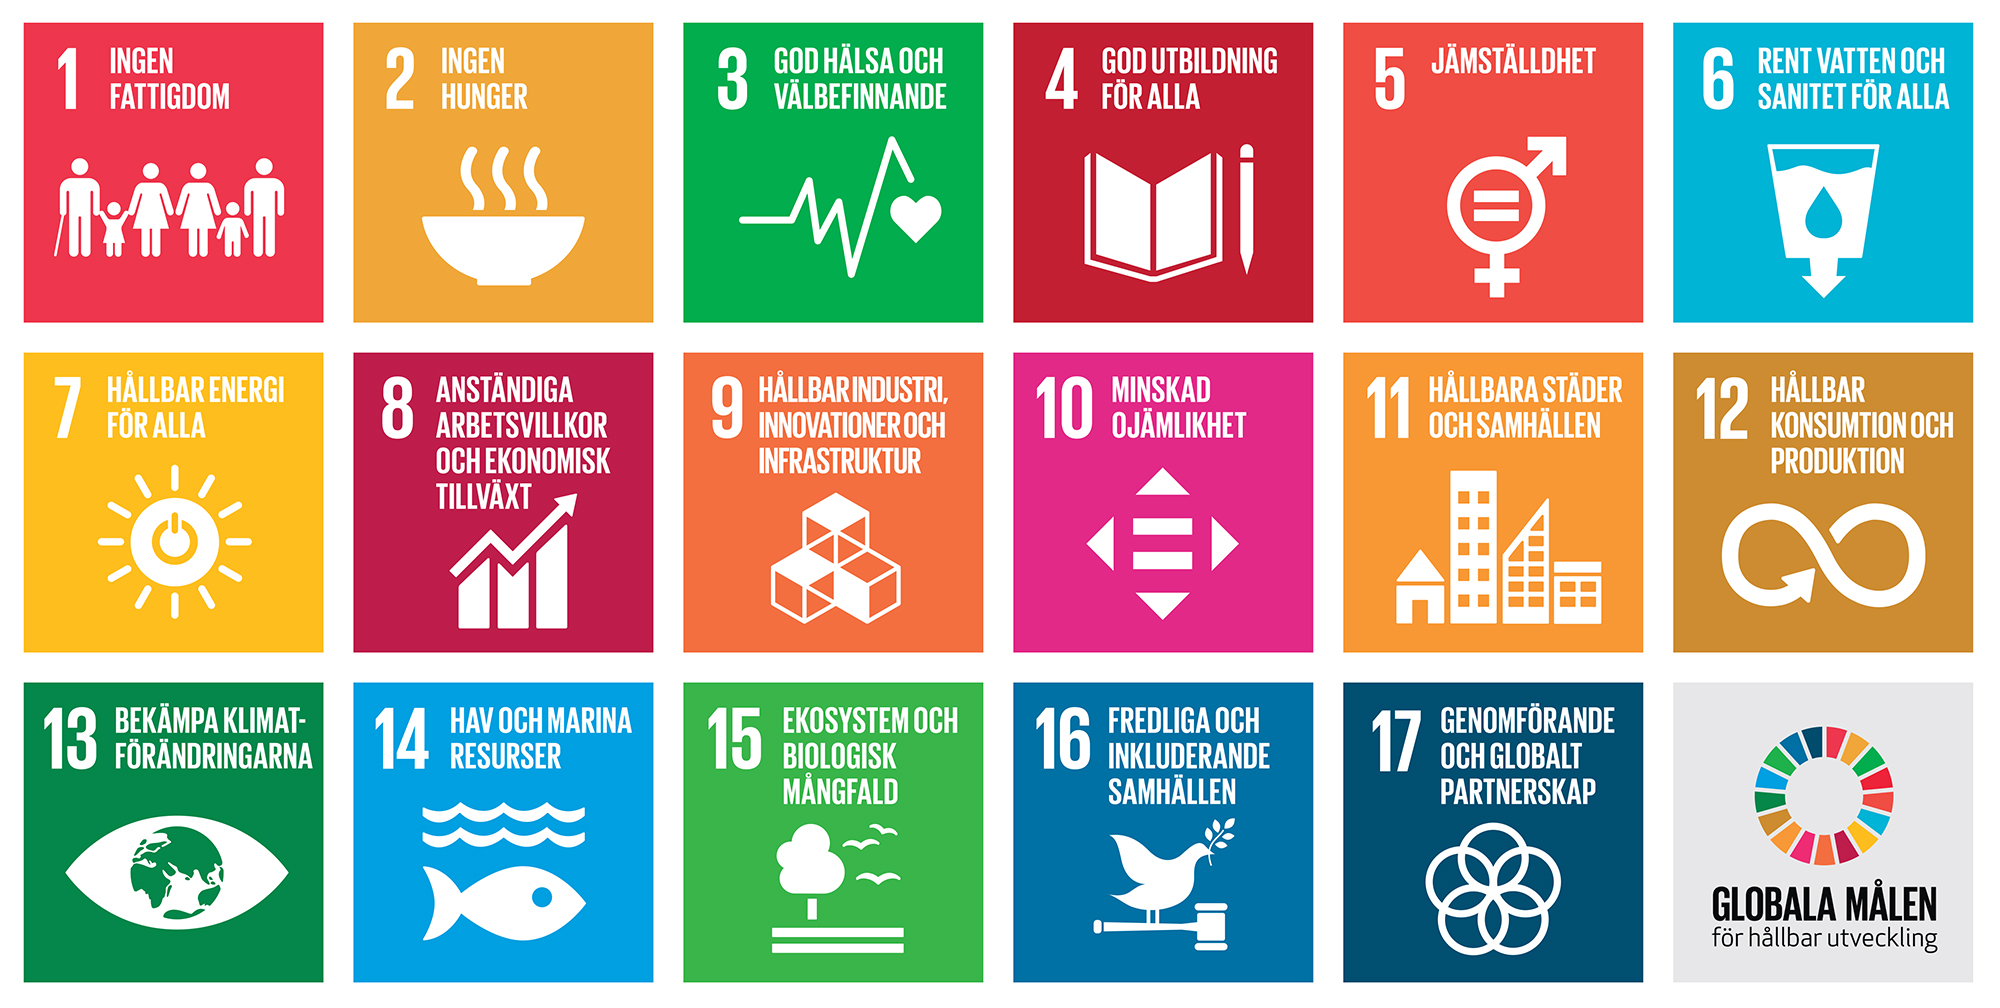 SDG, Agenda 2030, Global, mål, hållbar, utveckling, utvecklingsmål, FN, fattigdom, hunger